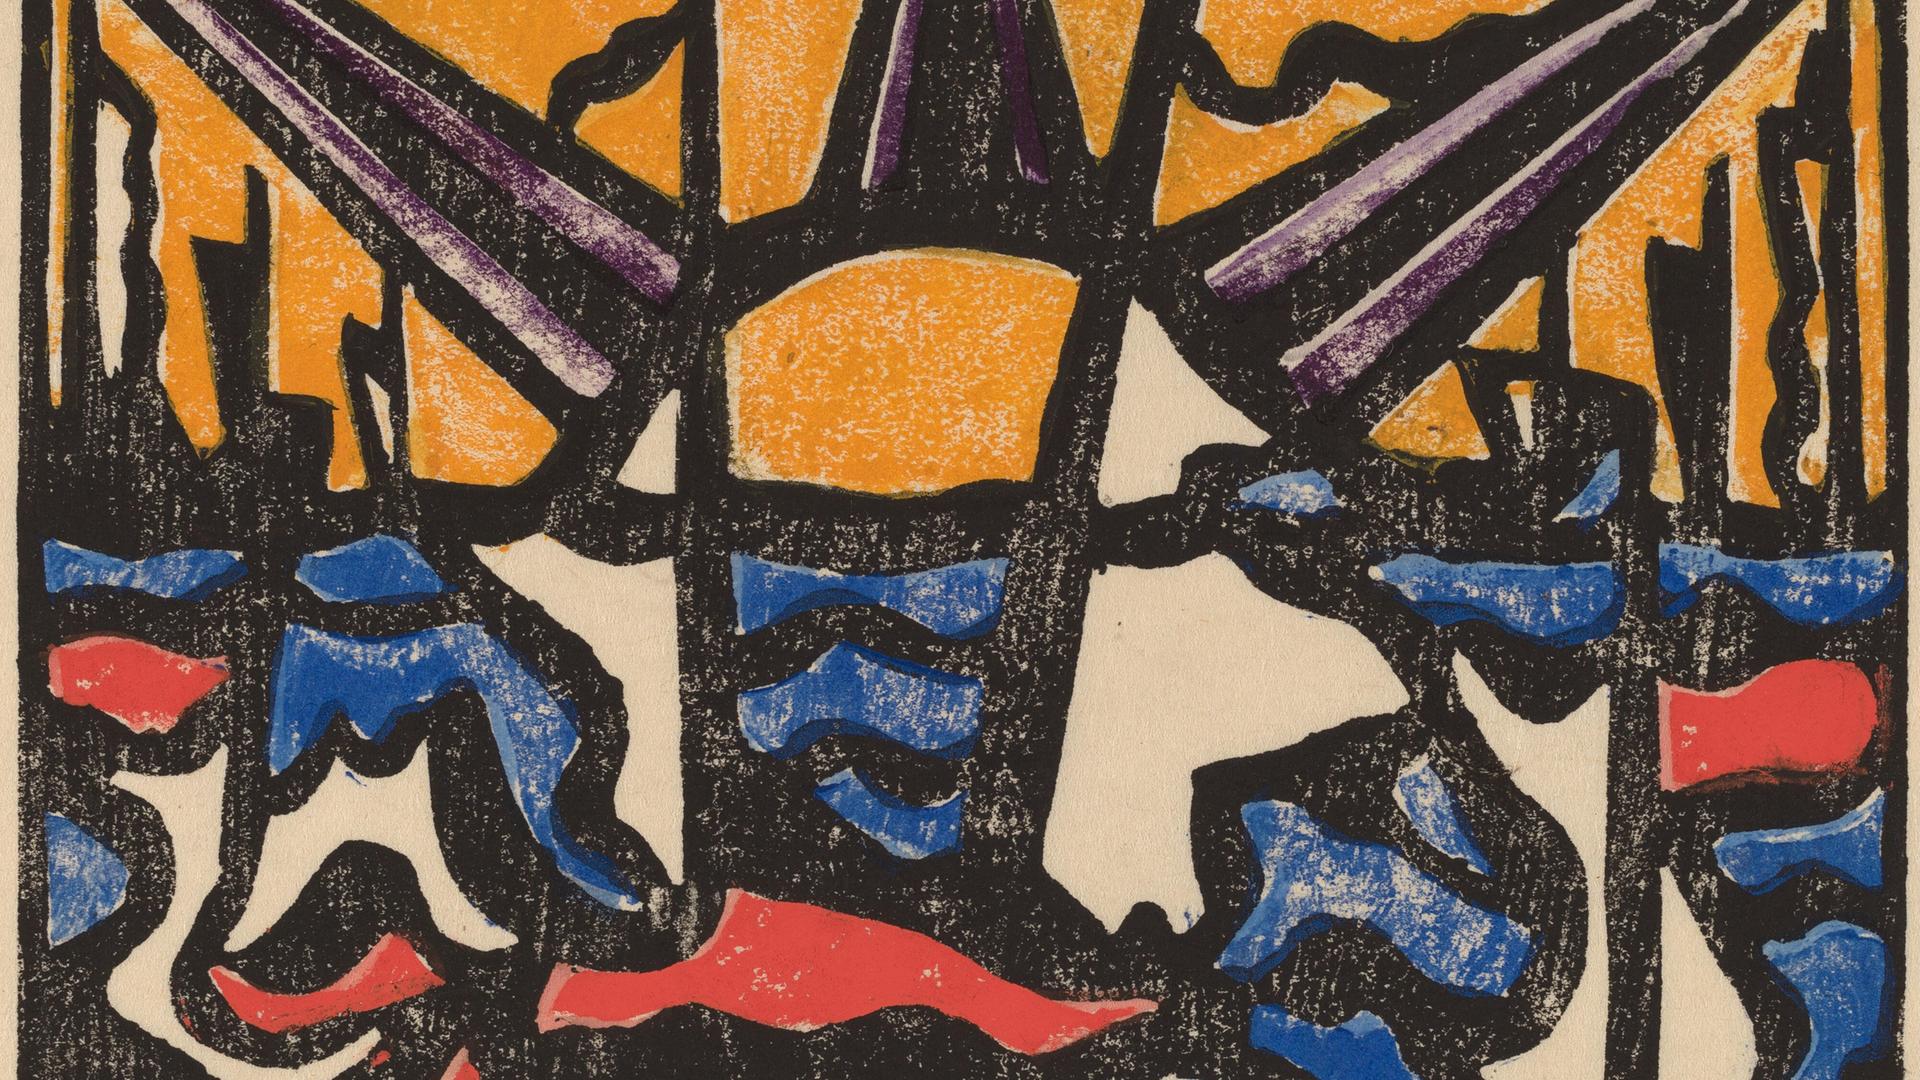 Ein abstraktes Gemälde zeigt in kräftigen Farben stilisiert Sonne, Meer und Schiffe